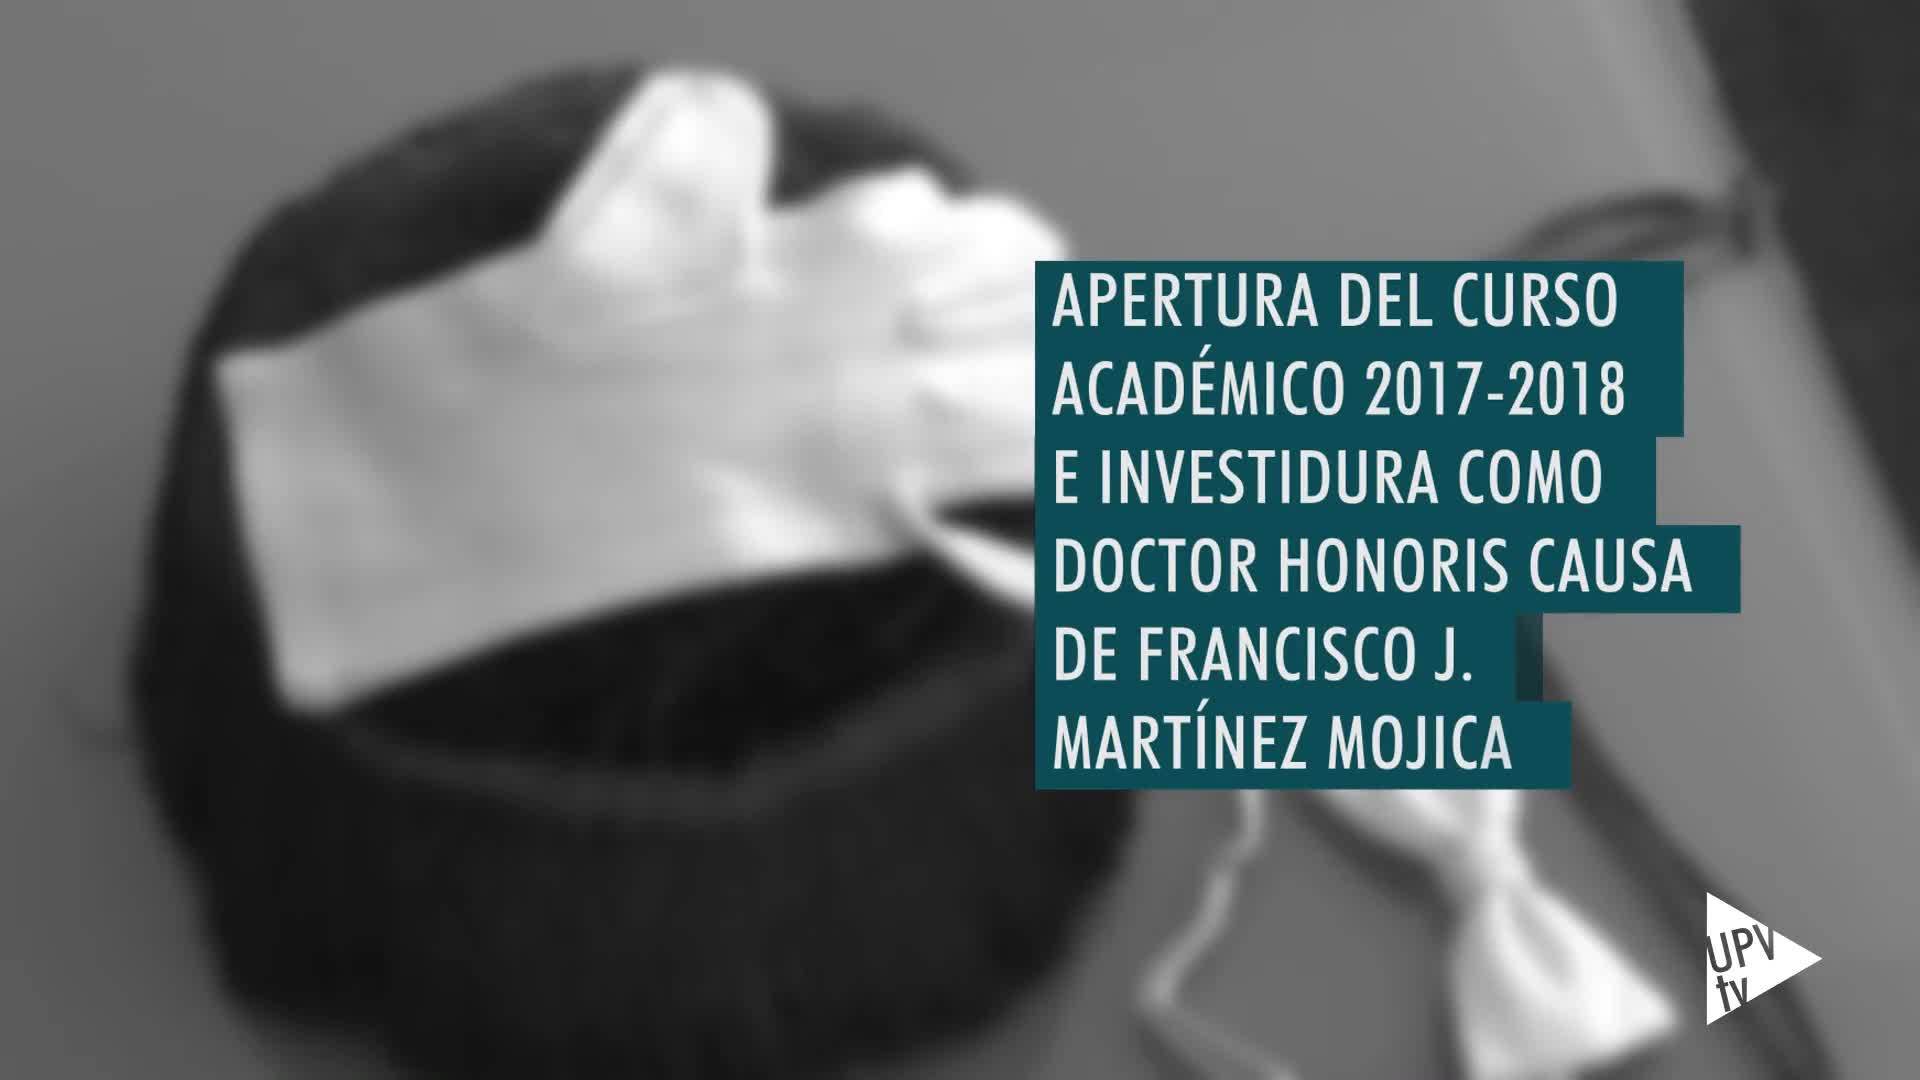 19-09-2017 Martínez Mojica nuevo doctor Honoris Causa